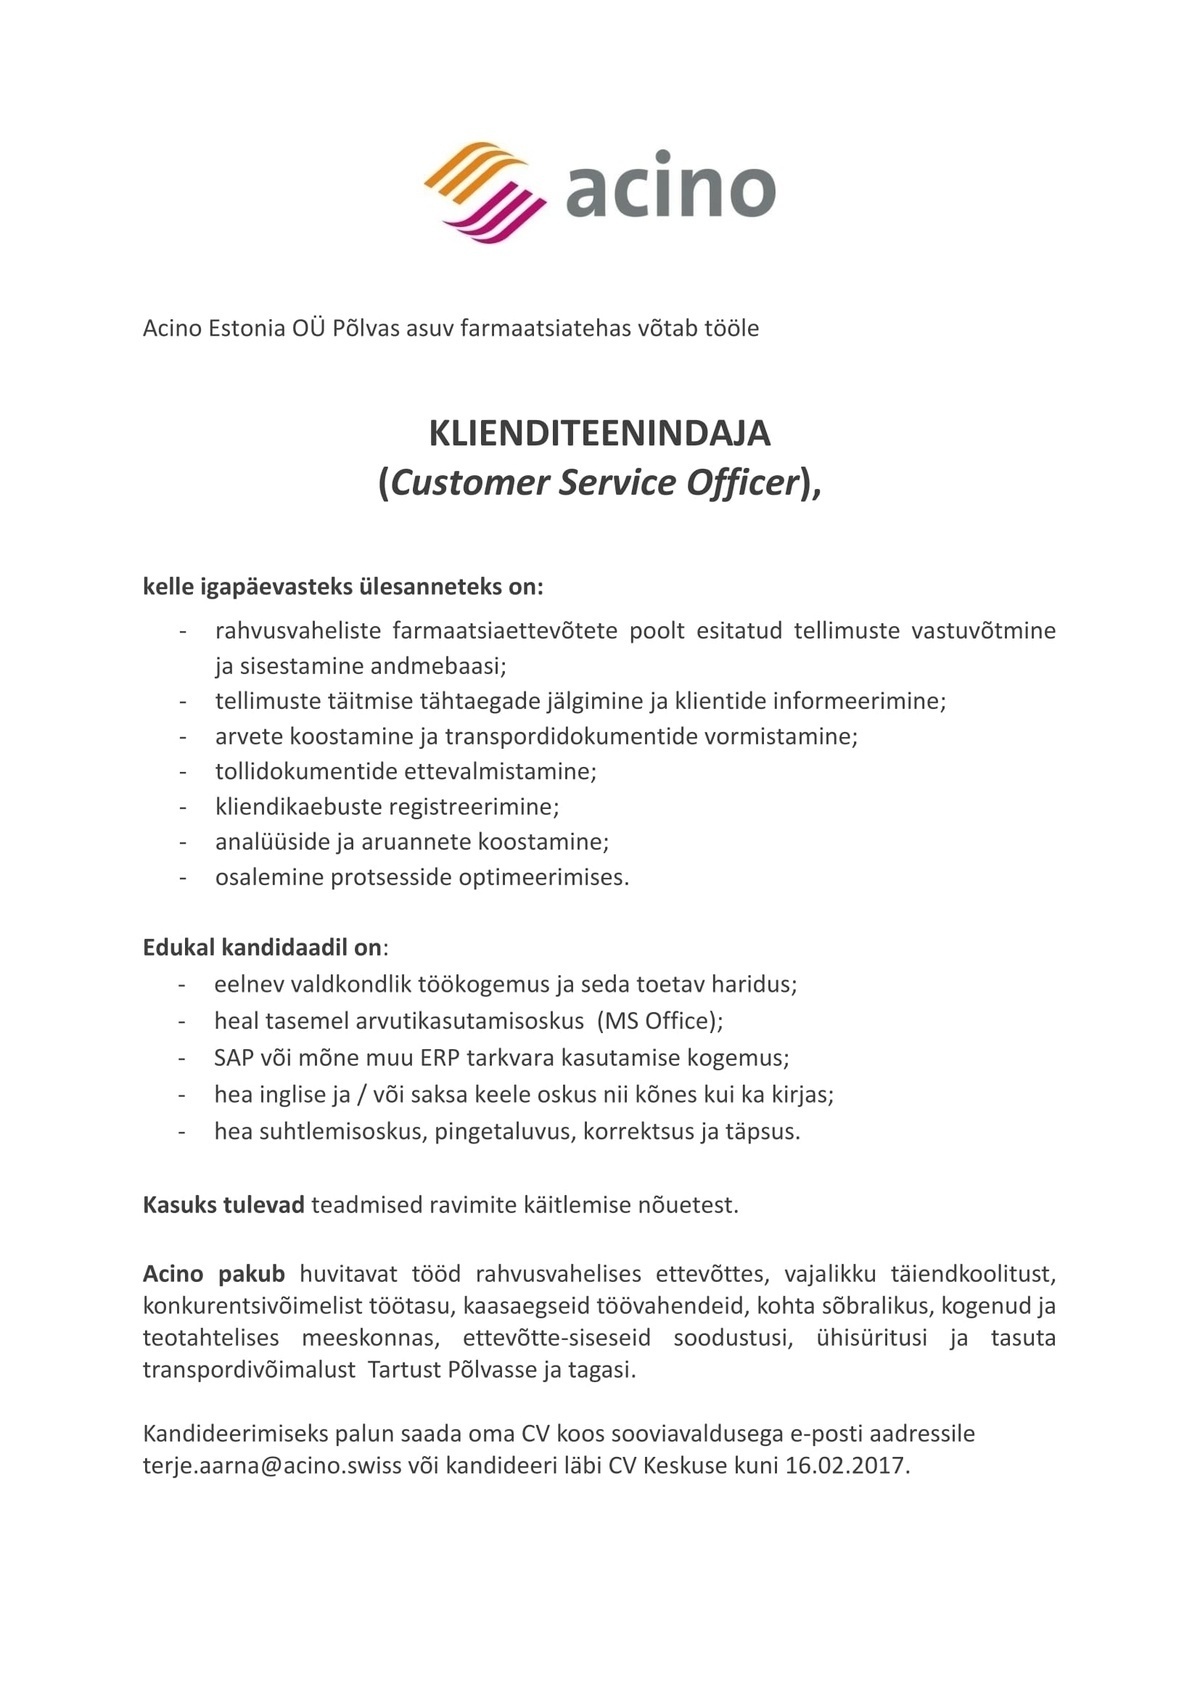 Acino Estonia OÜ Klienditeenindaja